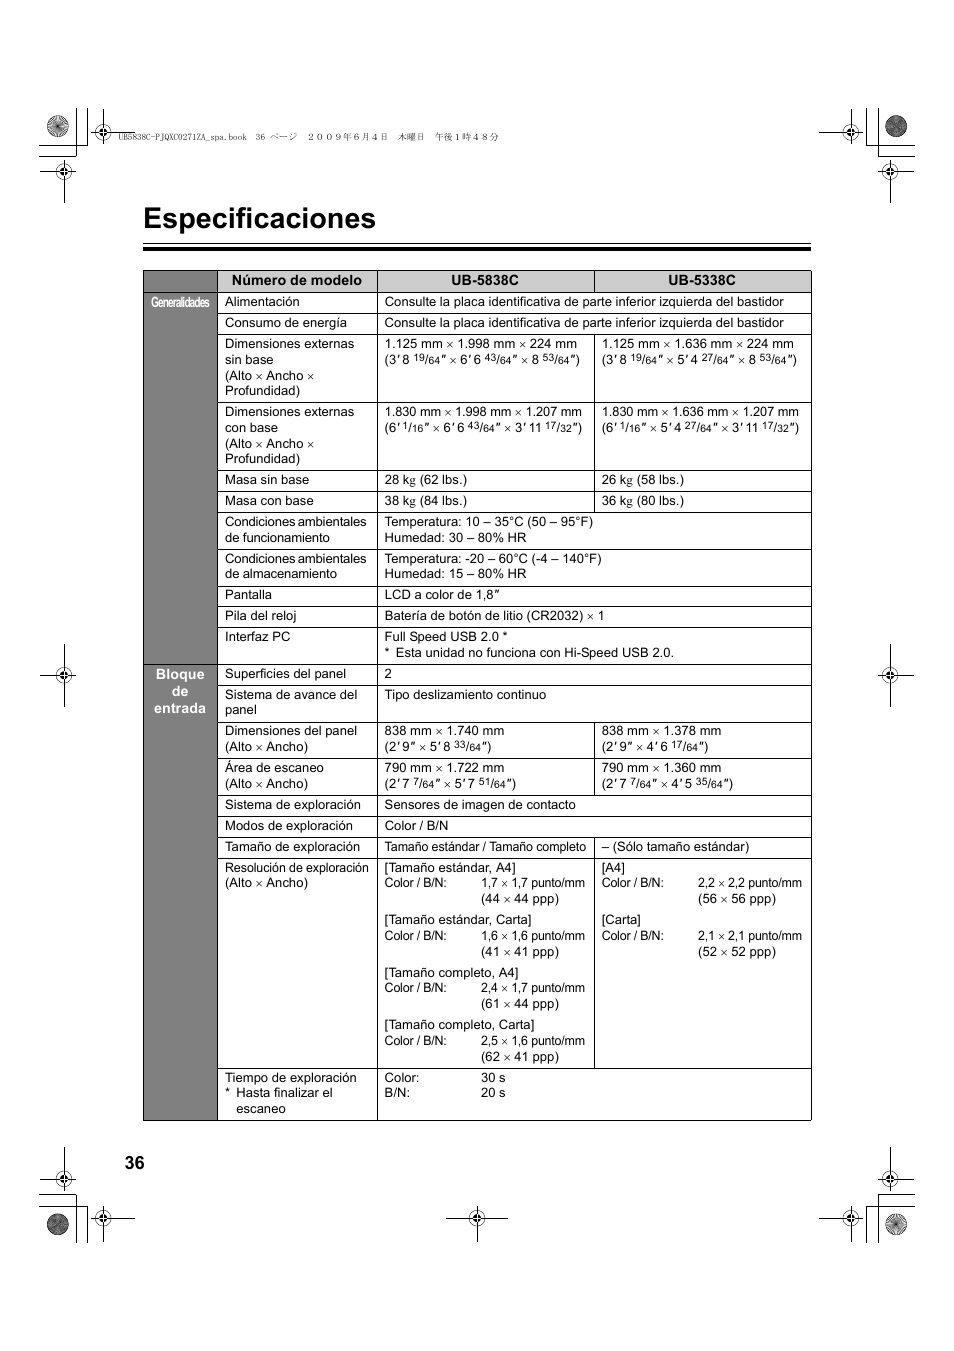 Especificaciones | Panasonic UB5838C Manual del usuario | Página 36 / 56